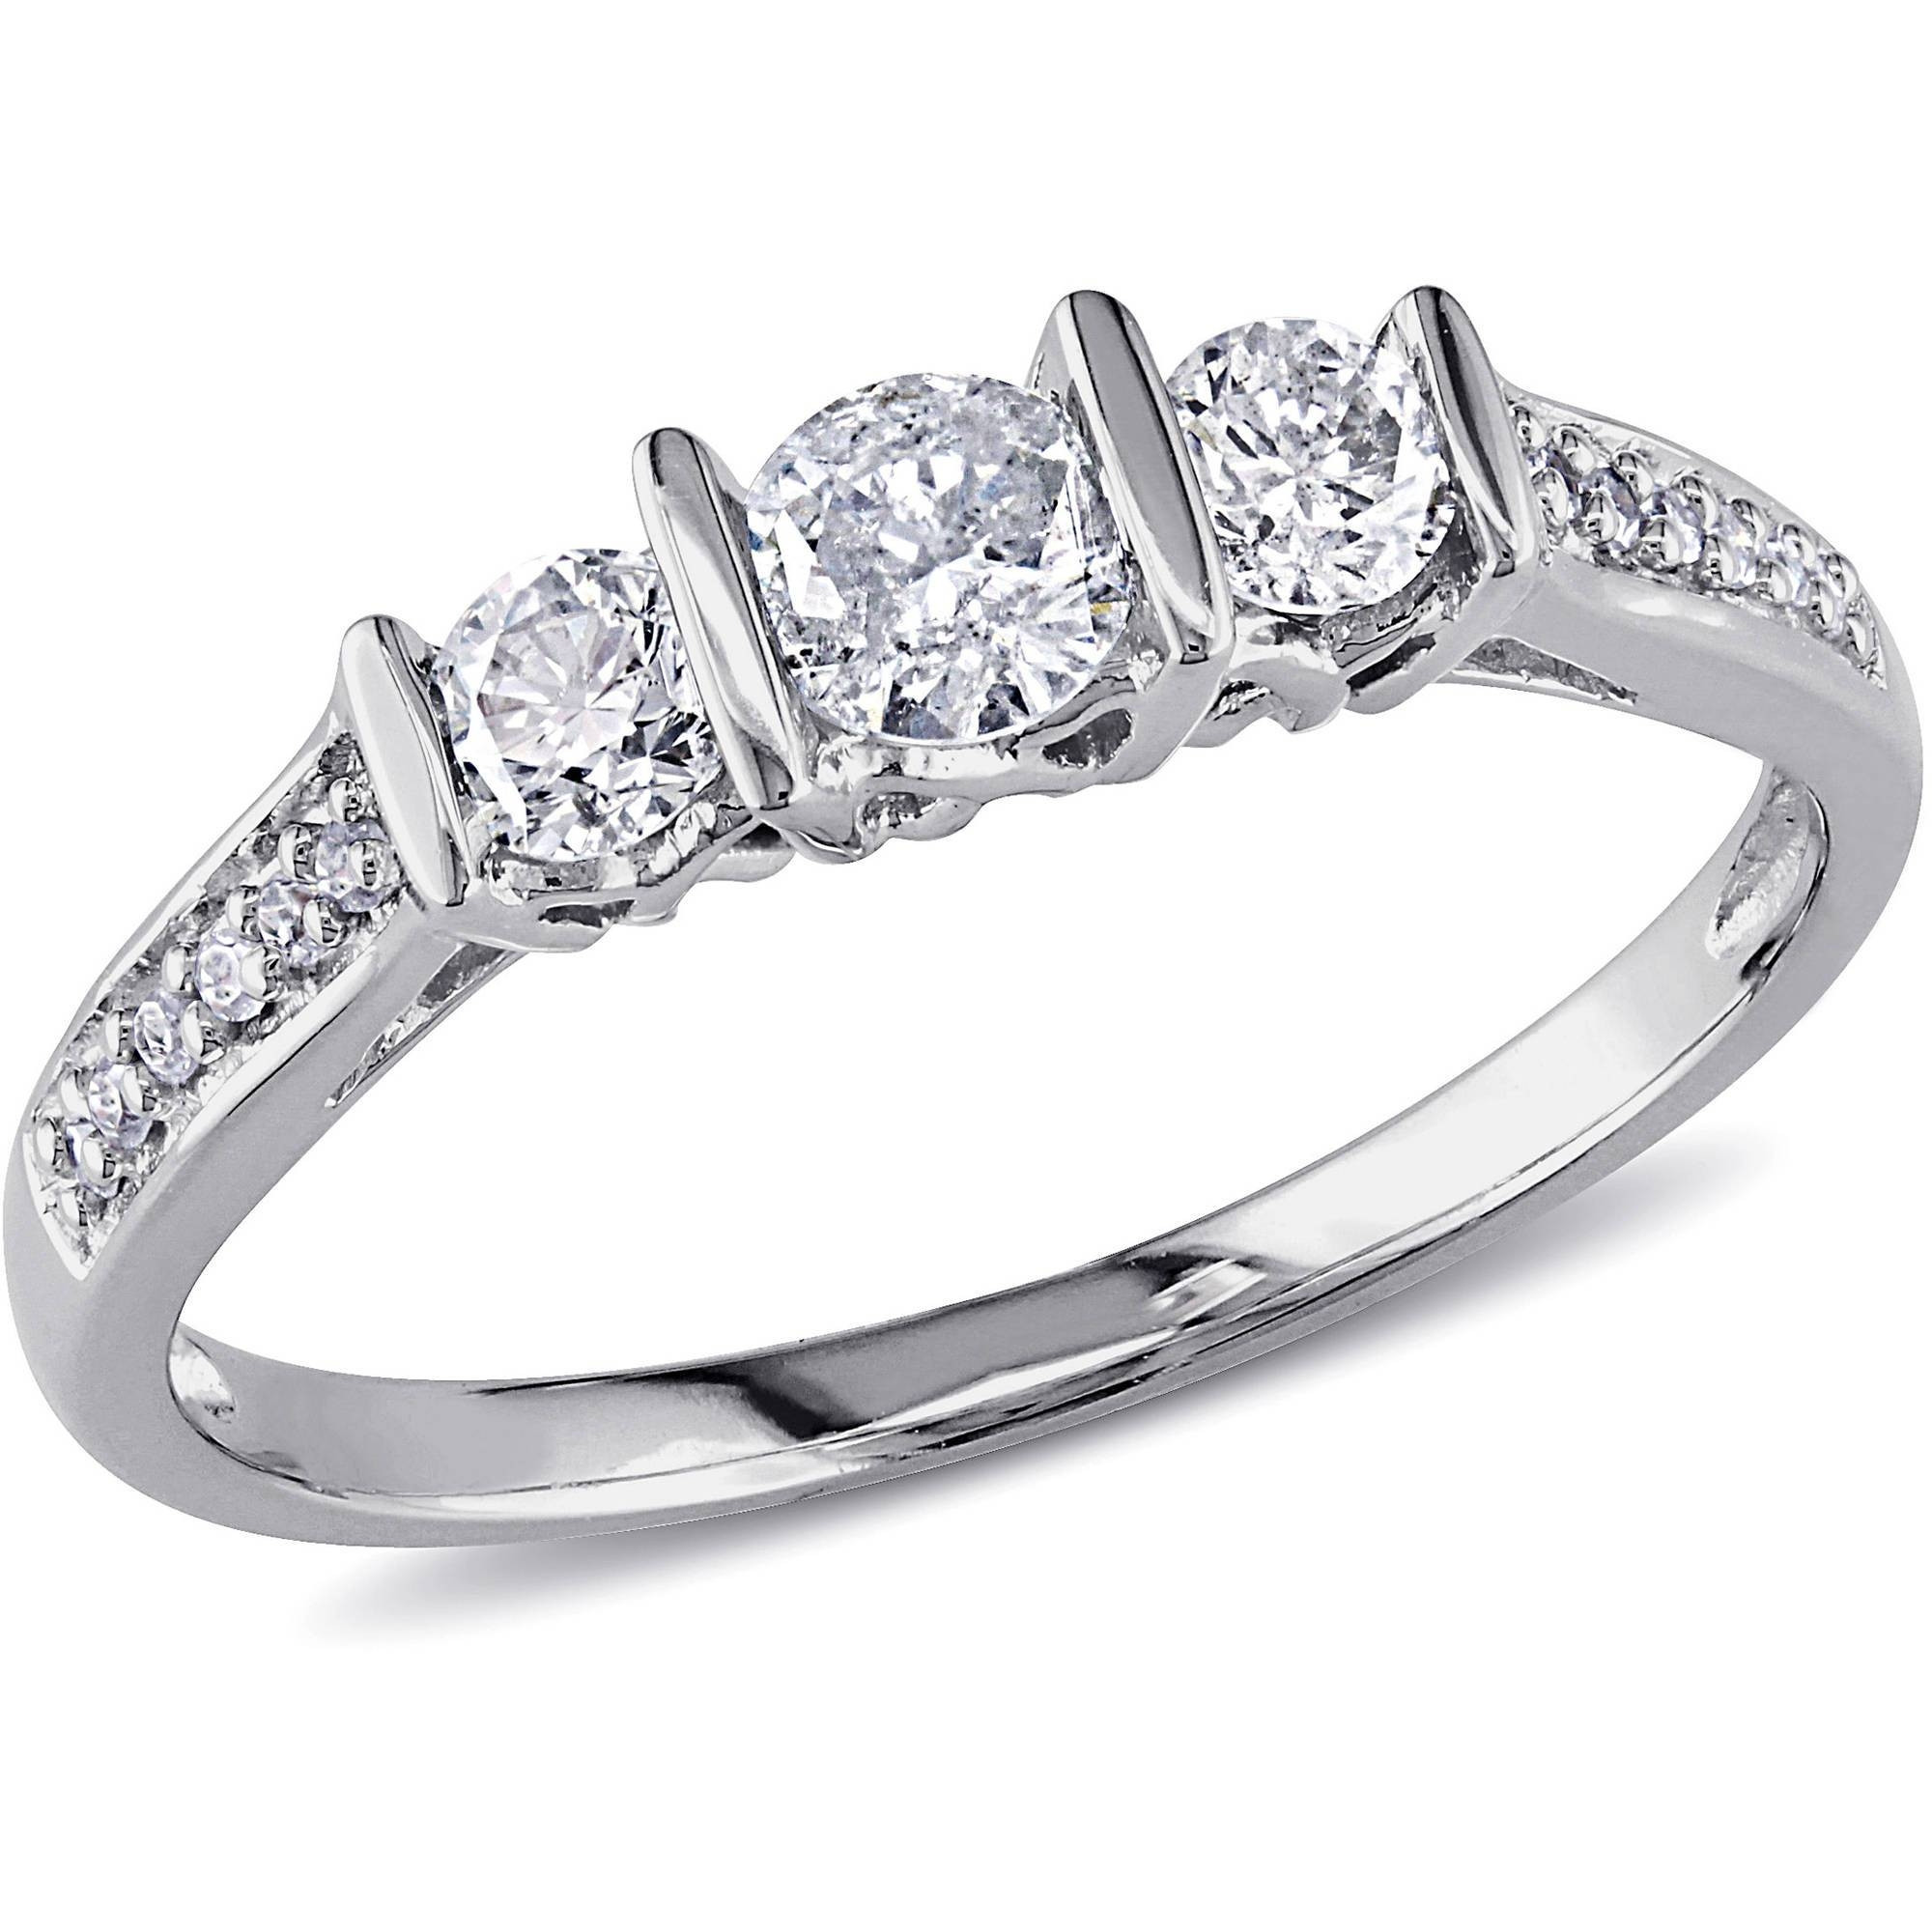 Diamond Rings At Walmart
 15 of Walmart Mens Engagement Rings